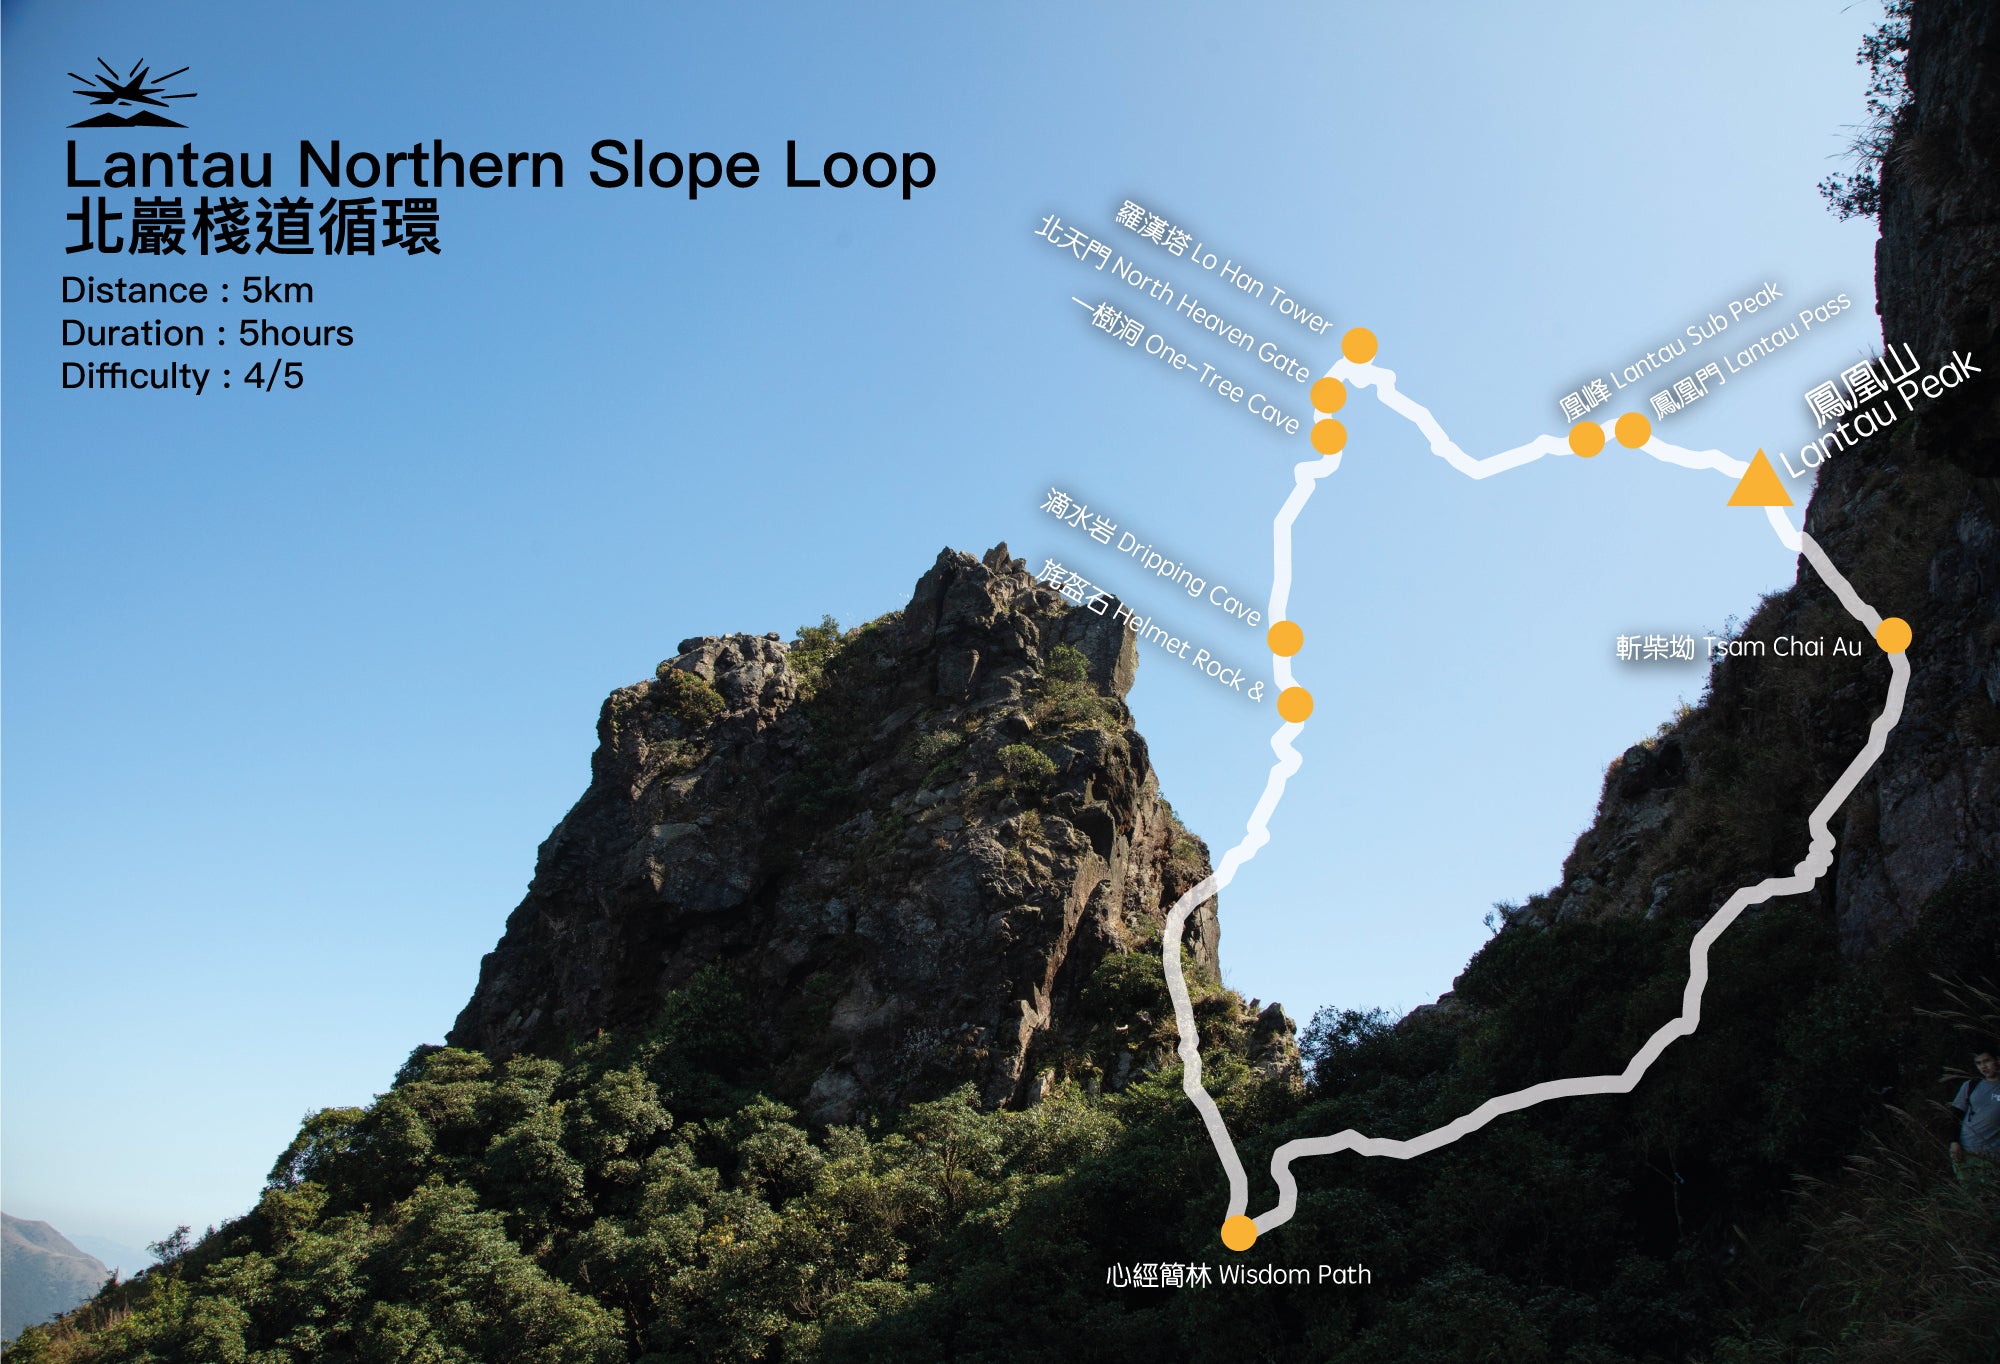 Northern Route Lantau - Loop